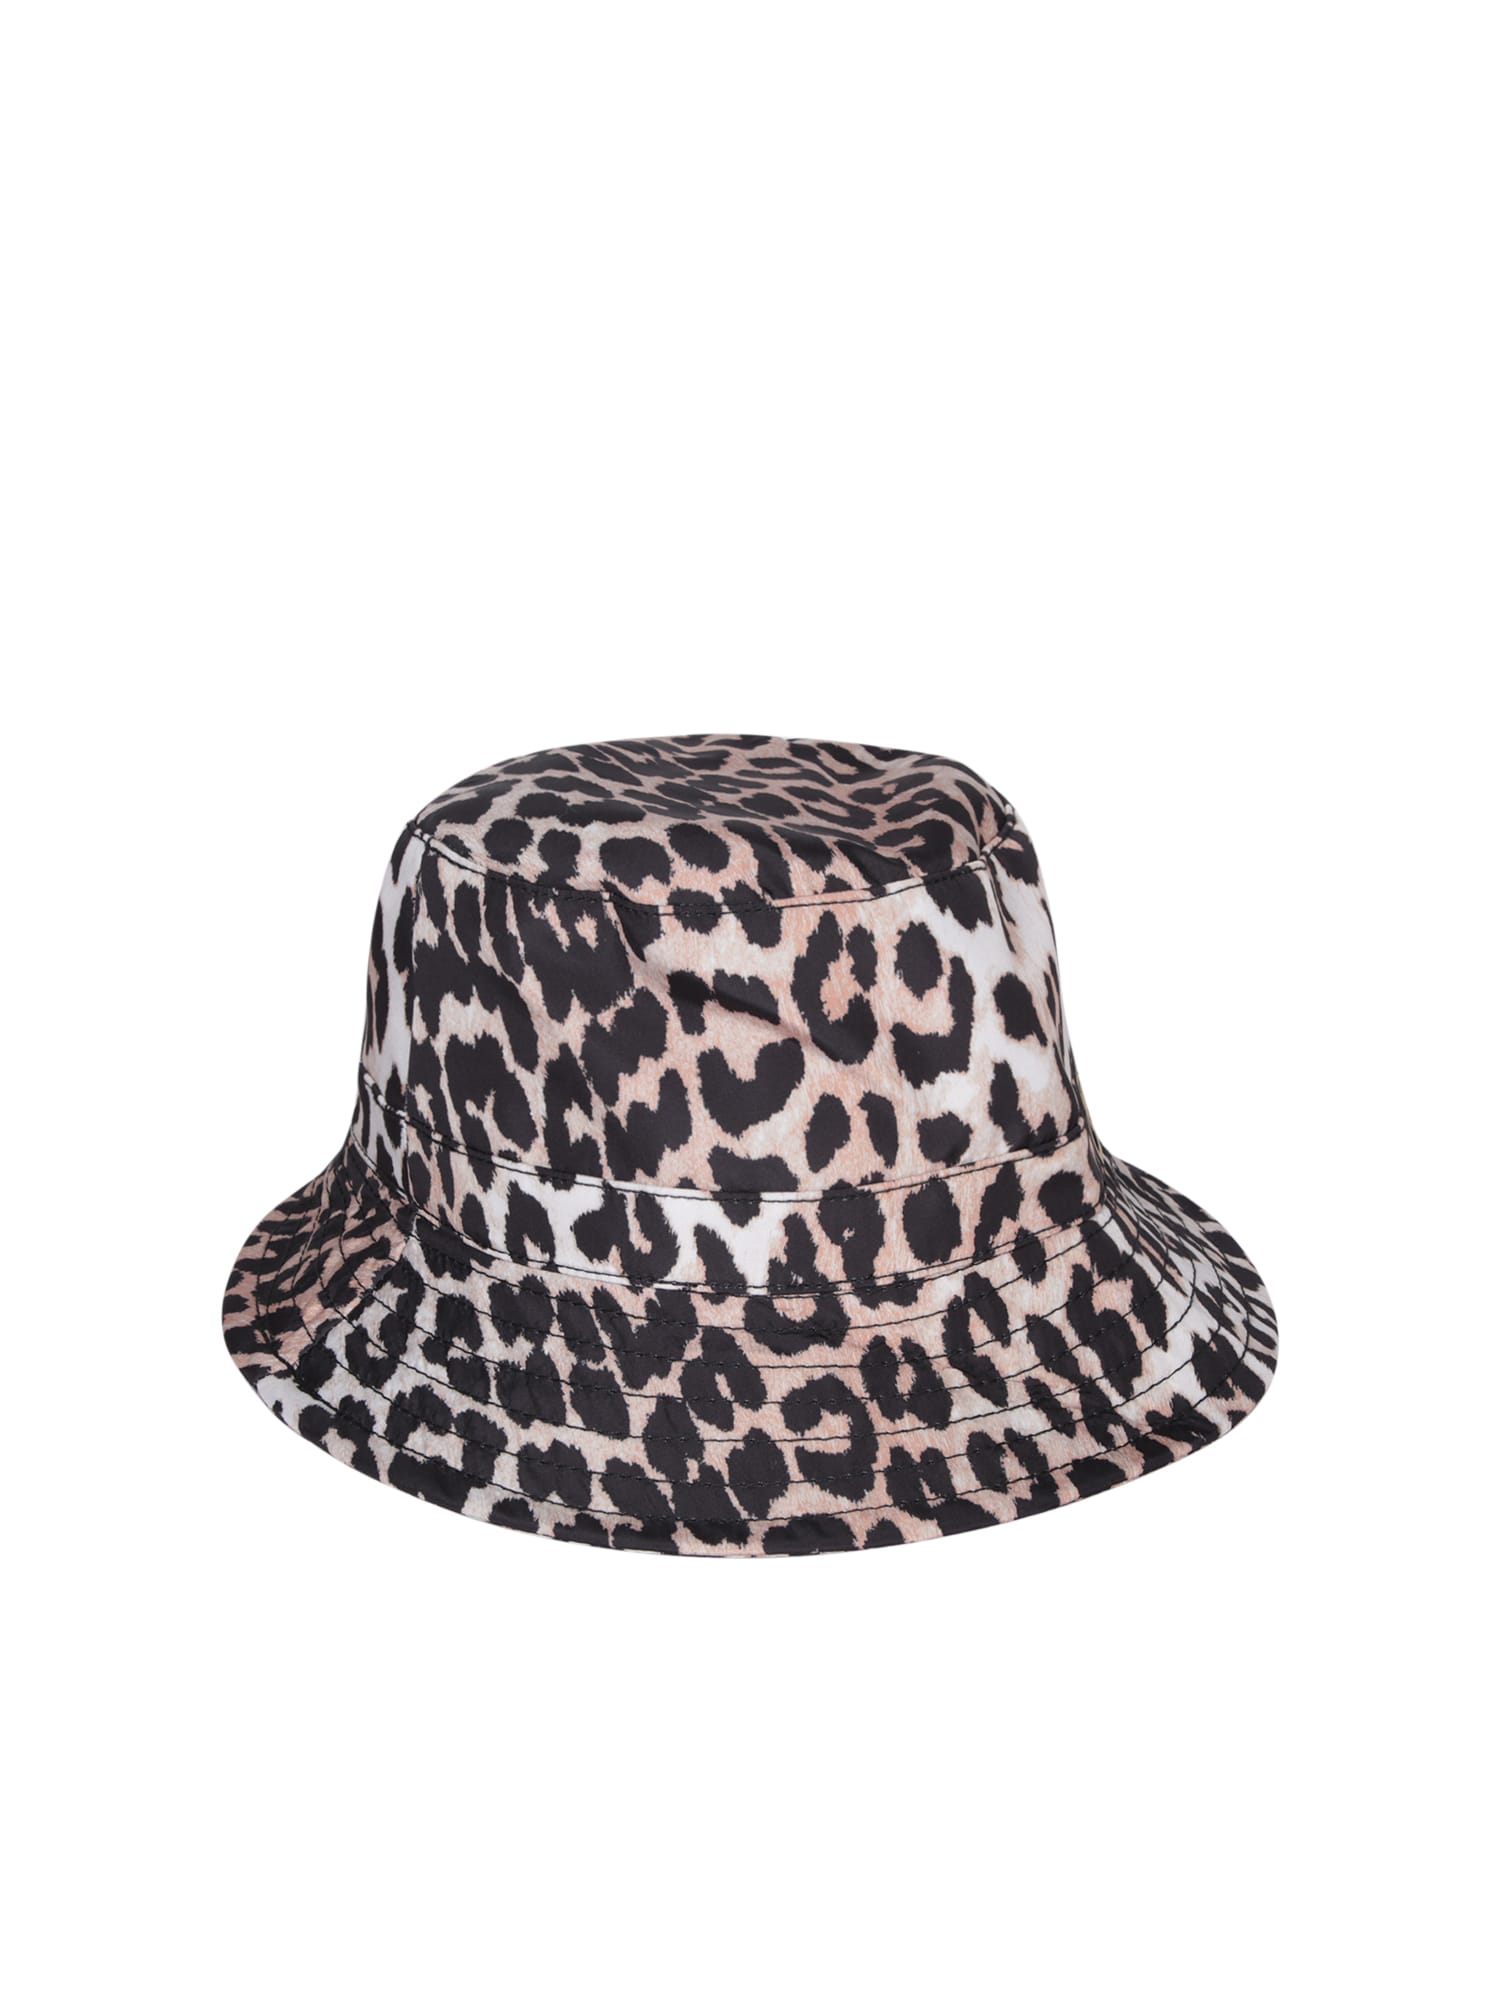 Shop Ganni Leopard Print Bucket Hat In Multi